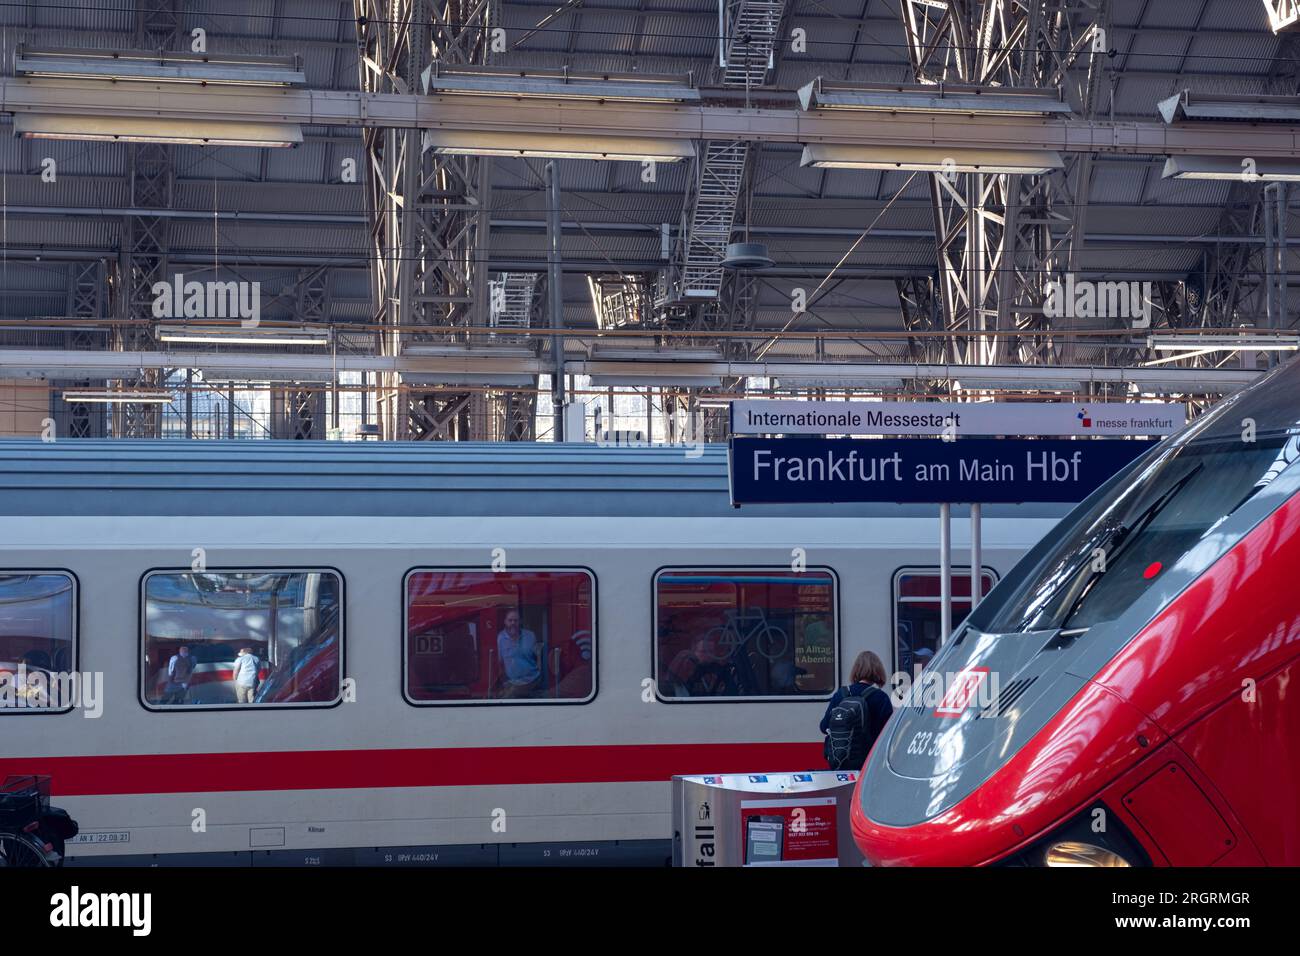 Der rote moderne Deutsche Zug fährt am Bahnhof Arankfurt am Main ab. Wunderschöne Nahaufnahme des Zuges. Stockfoto